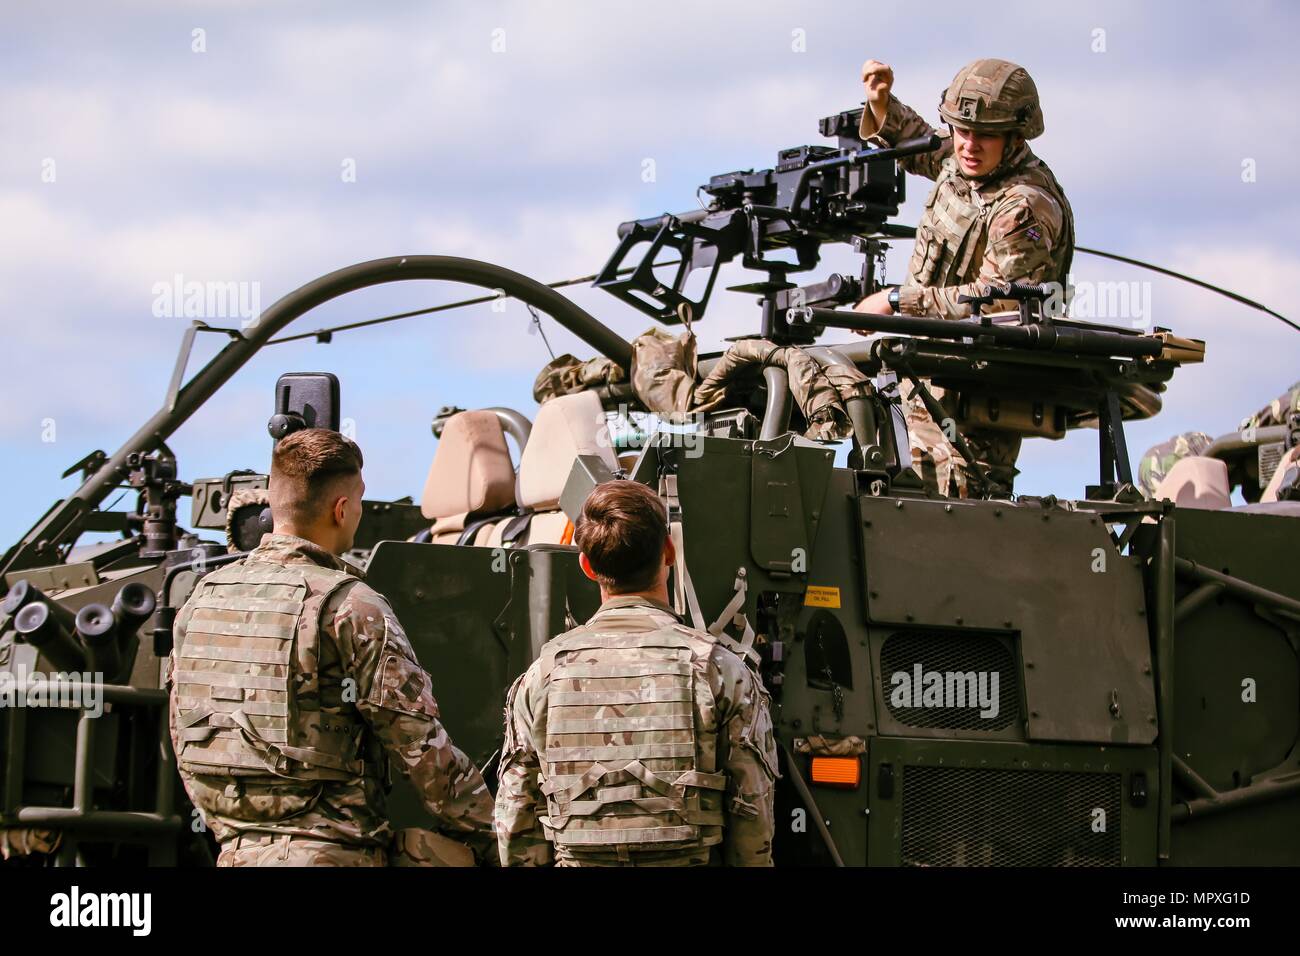 Britischen Armee Soldat 1 Queen's Dragoon Guards (oben, rechts), Soldaten lehrt zugewiesen, wie ein L134A 1 Grenade Machine Gun zu verwenden, während der erste von vier Tag Waffen Schulungsveranstaltung mit dem Battle Group Polen Bemowo Piskie, Polen, am Mai 15, 2018, 15. Mai 2018. Battle Group Polen ist ein einzigartiges, multinationale Koalition von USA GROSSBRITANNIEN Kroatischen und rumänischen Soldaten, die mit der polnischen 15 mechanisierte Brigade als Abschreckung Kraft zur Unterstützung des NATO-Enhanced vorwärts Präsenz dienen. (U.S. Armee Foto von SPC. Hubert D. Delany III/22 Mobile Public Affairs Loslösung) Bild Stockfoto